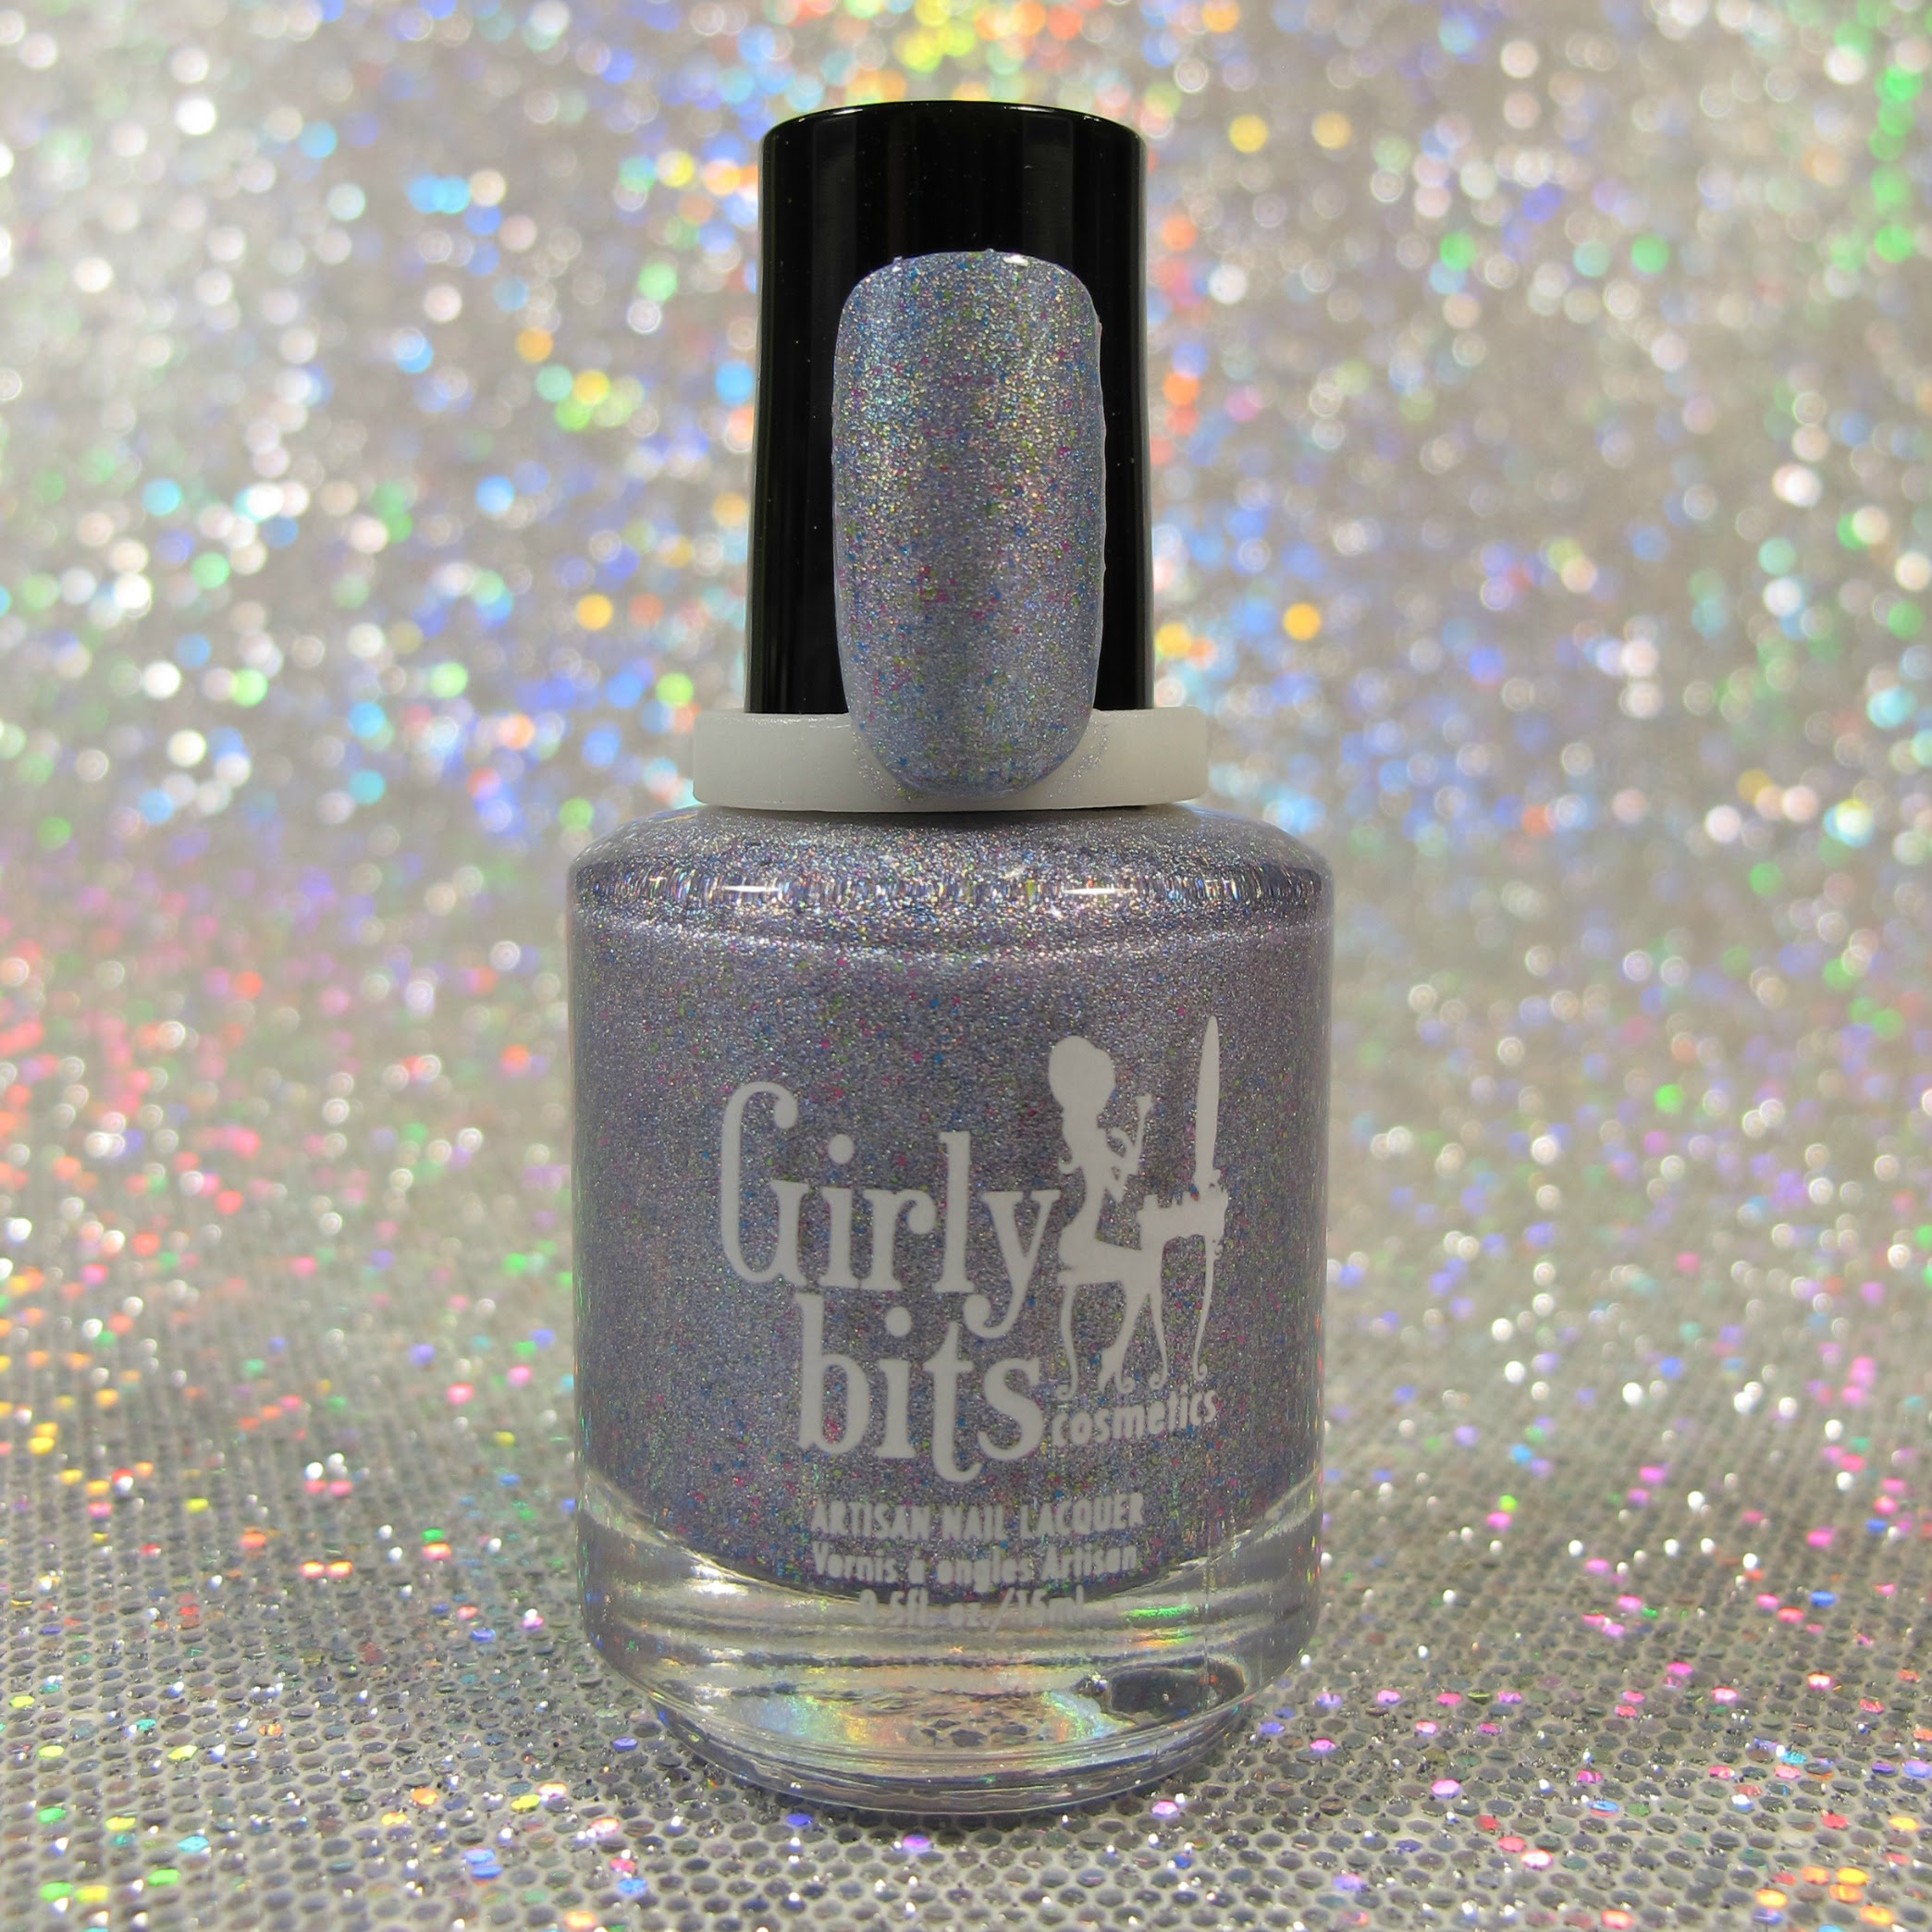 stardust-bottle-img-6093.jpg